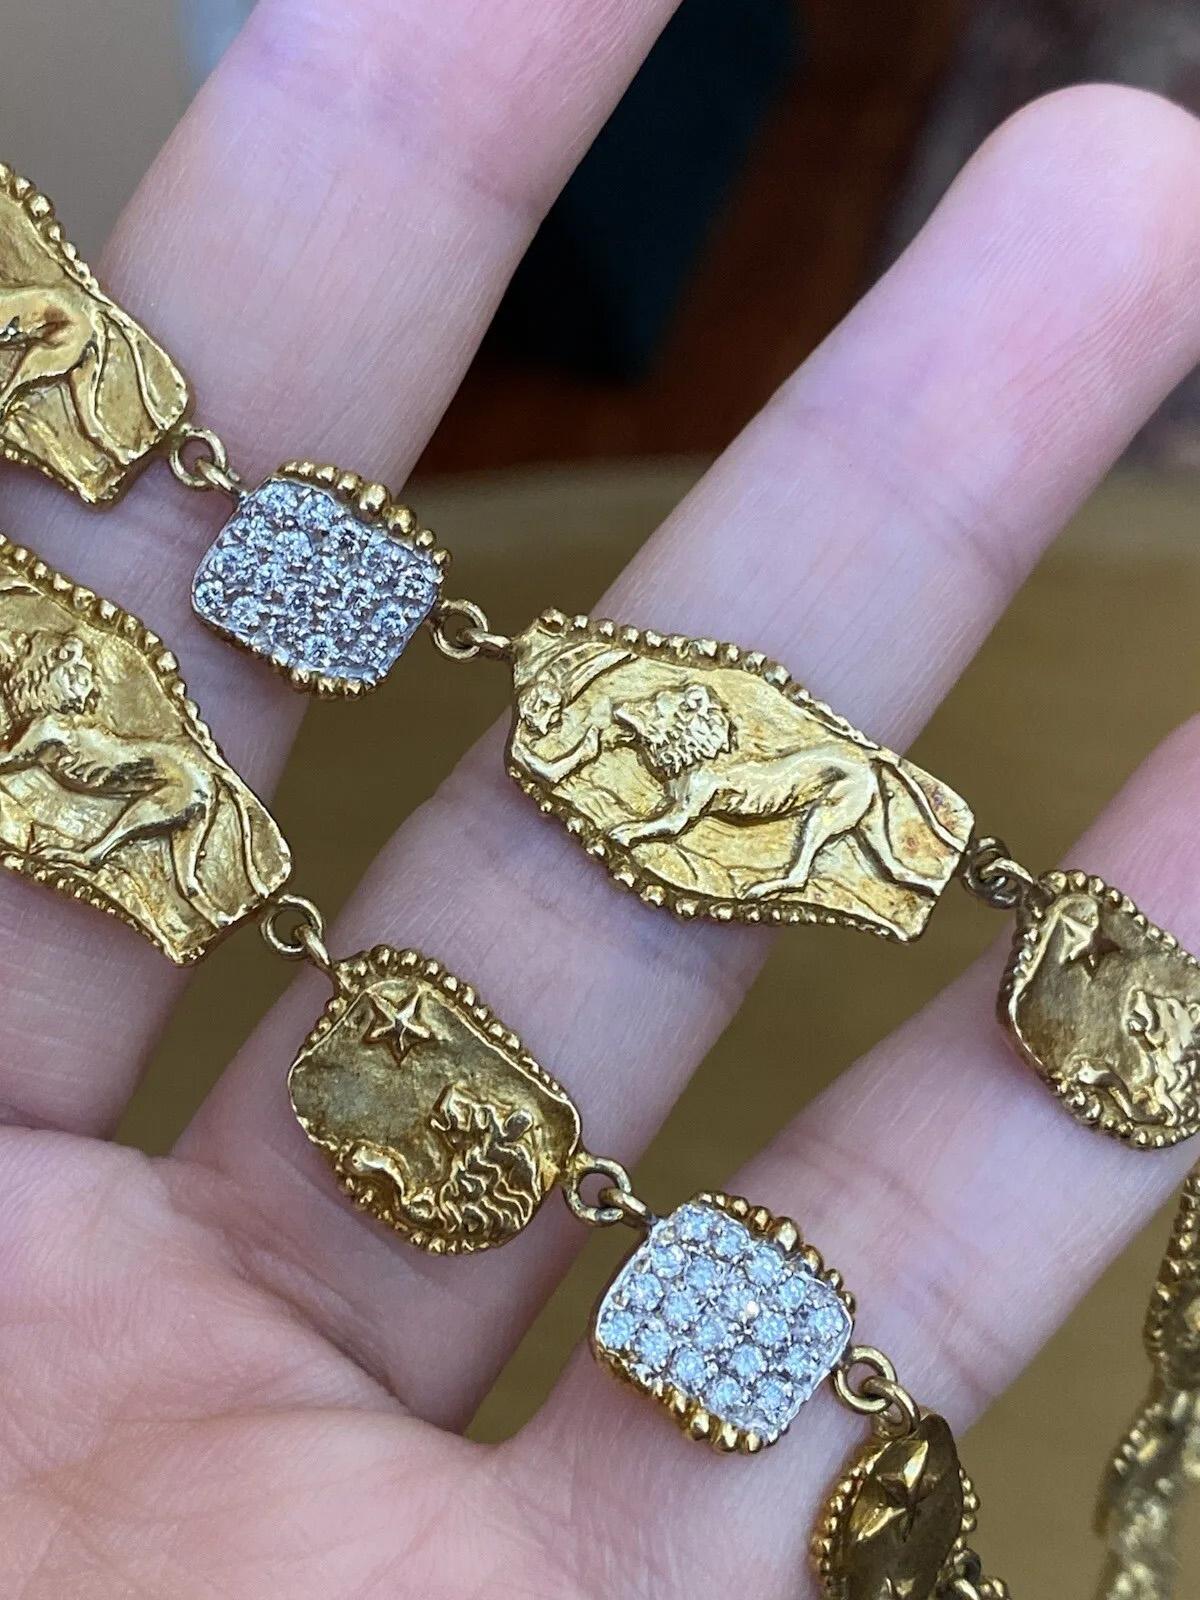 SEIDEN GANG Dreifach-Strang Diamant-Halskette 18k Gelbgold

Die dreifach gestrickte Diamant-Halskette der Seiden Gang zeichnet sich durch Abschnitte mit Pave-Diamanten aus, die sich mit goldenen Stationen abwechseln, auf denen Löwen, Jäger und